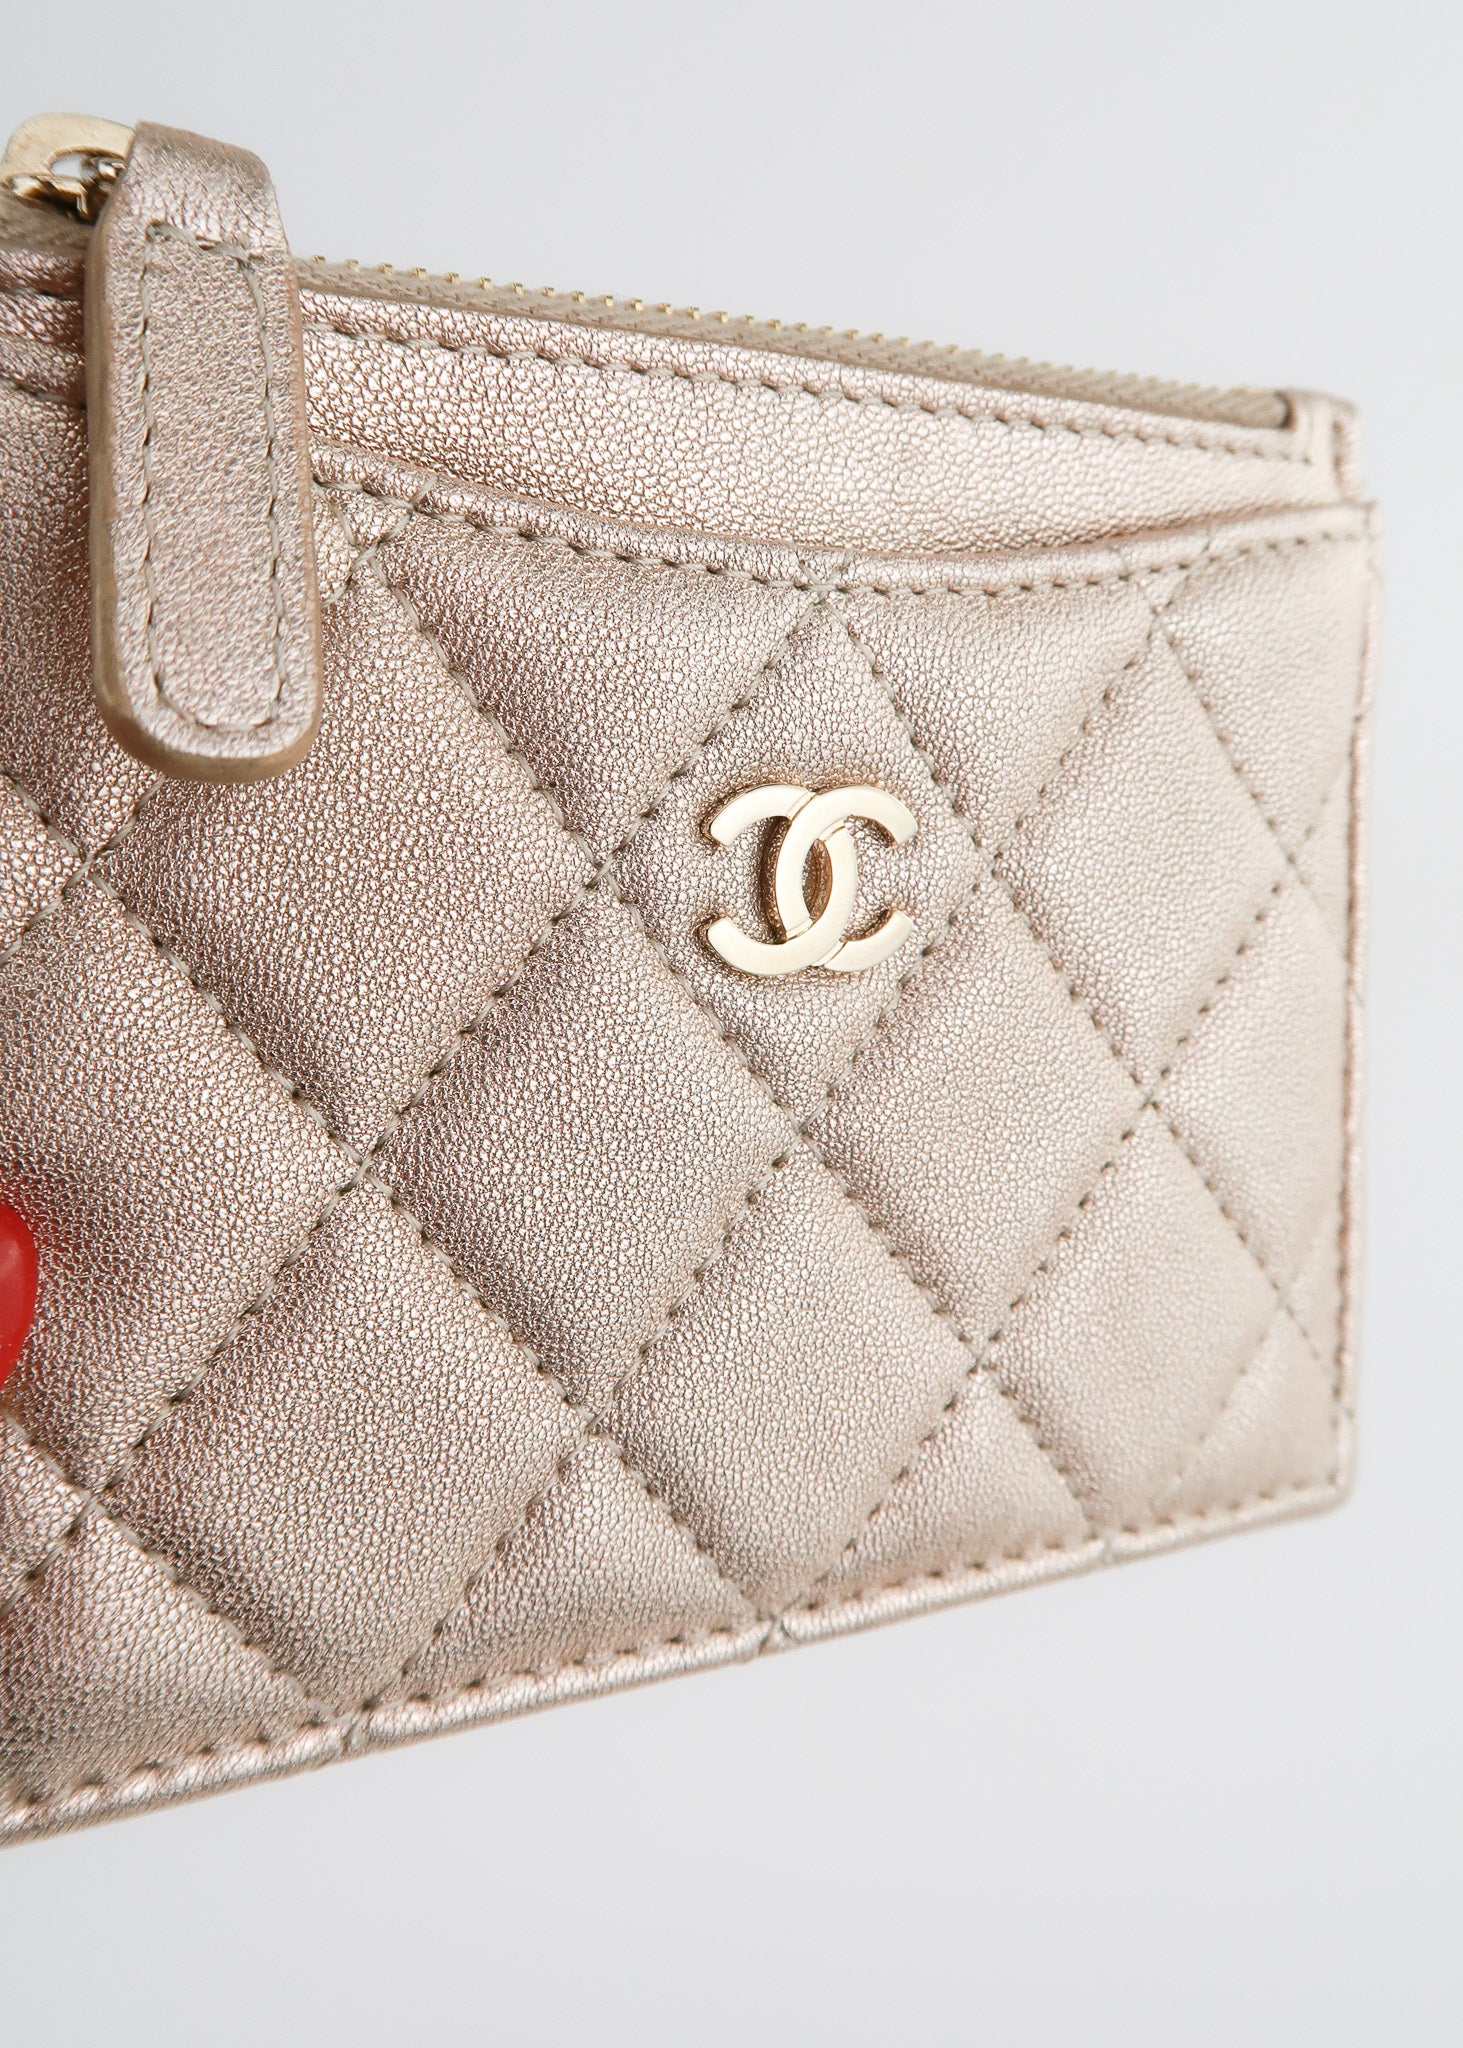 Chanel Lambskin Card Holder Gold – DAC